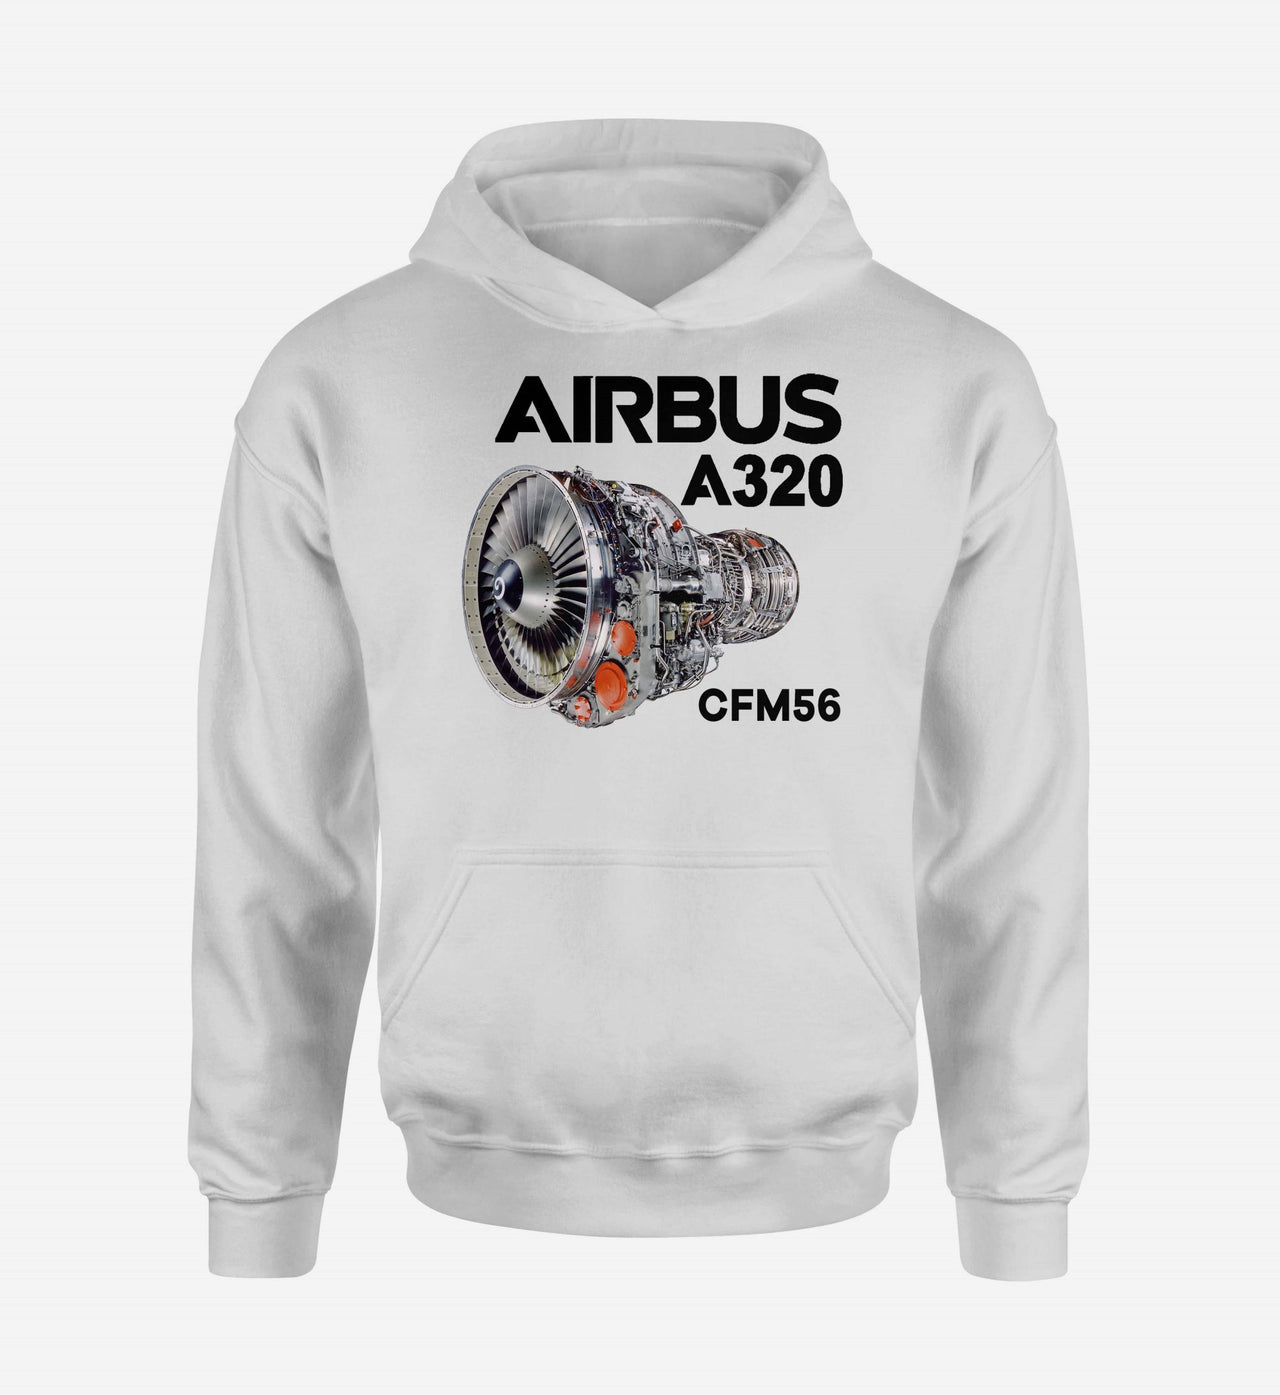 Airbus A320 & CFM56 Engine Designed Hoodies